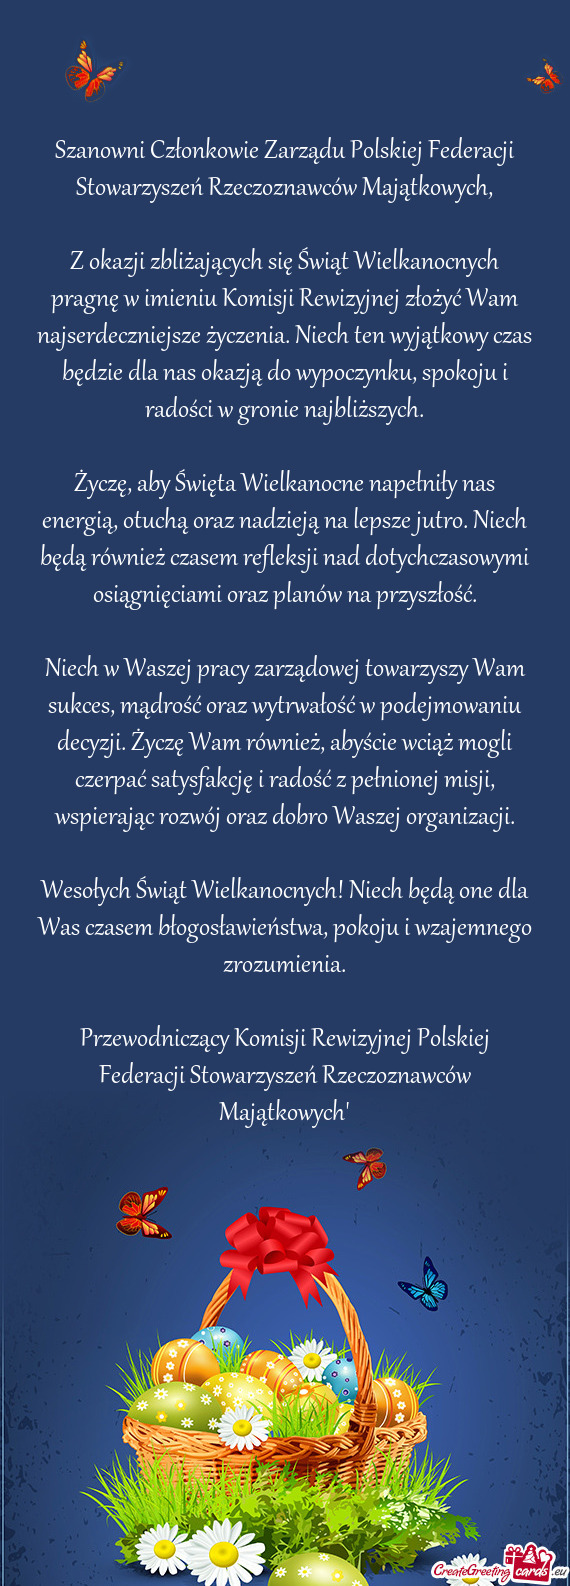 Szanowni Członkowie Zarządu Polskiej Federacji Stowarzyszeń Rzeczoznawców Majątkowych